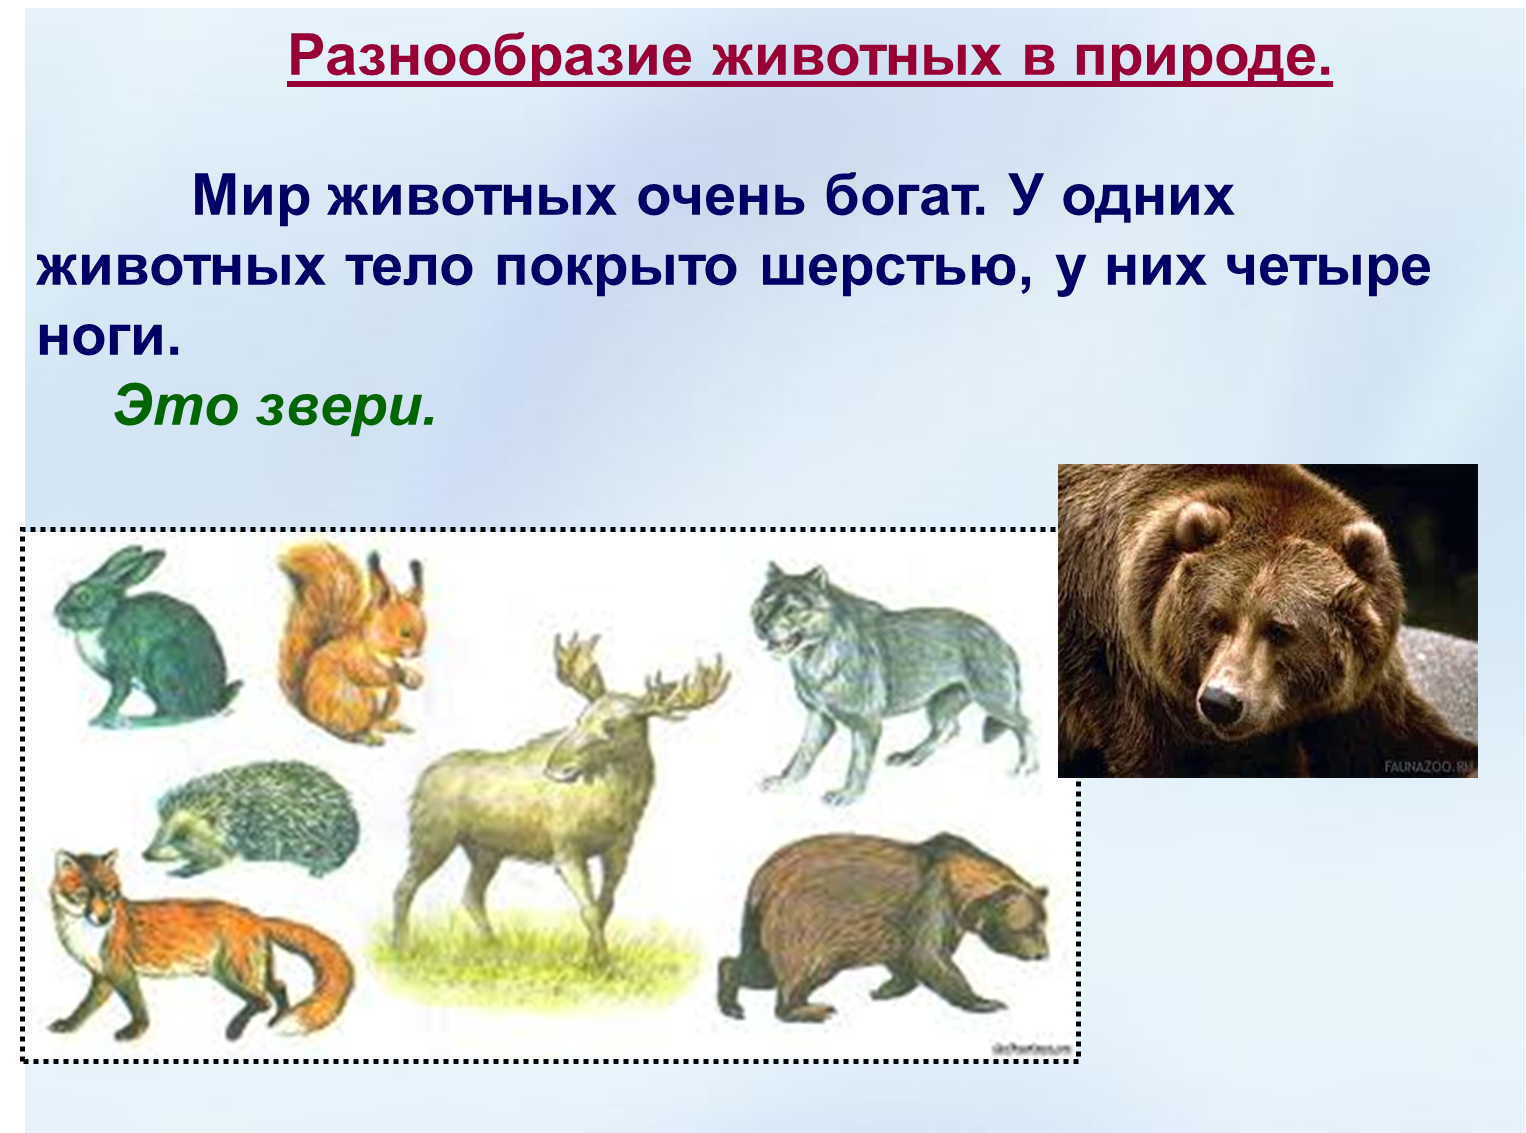 Животных разнообразие животных. Разнообразие зверей. Разнообразие животных презентация.